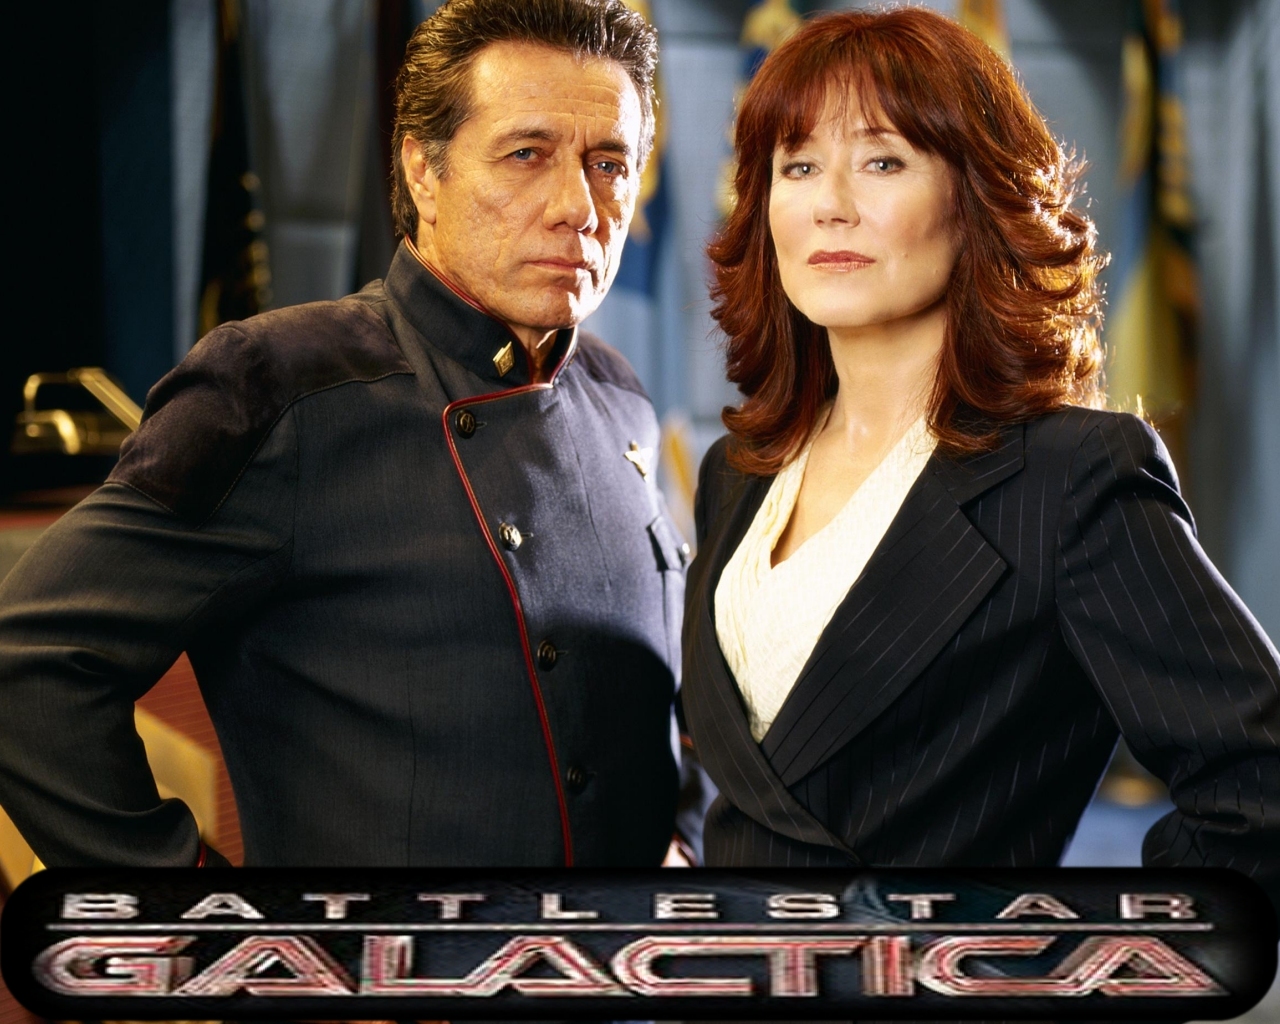 1028 X - Mary Mcdonnell Battlestar Galactica , HD Wallpaper & Backgrounds